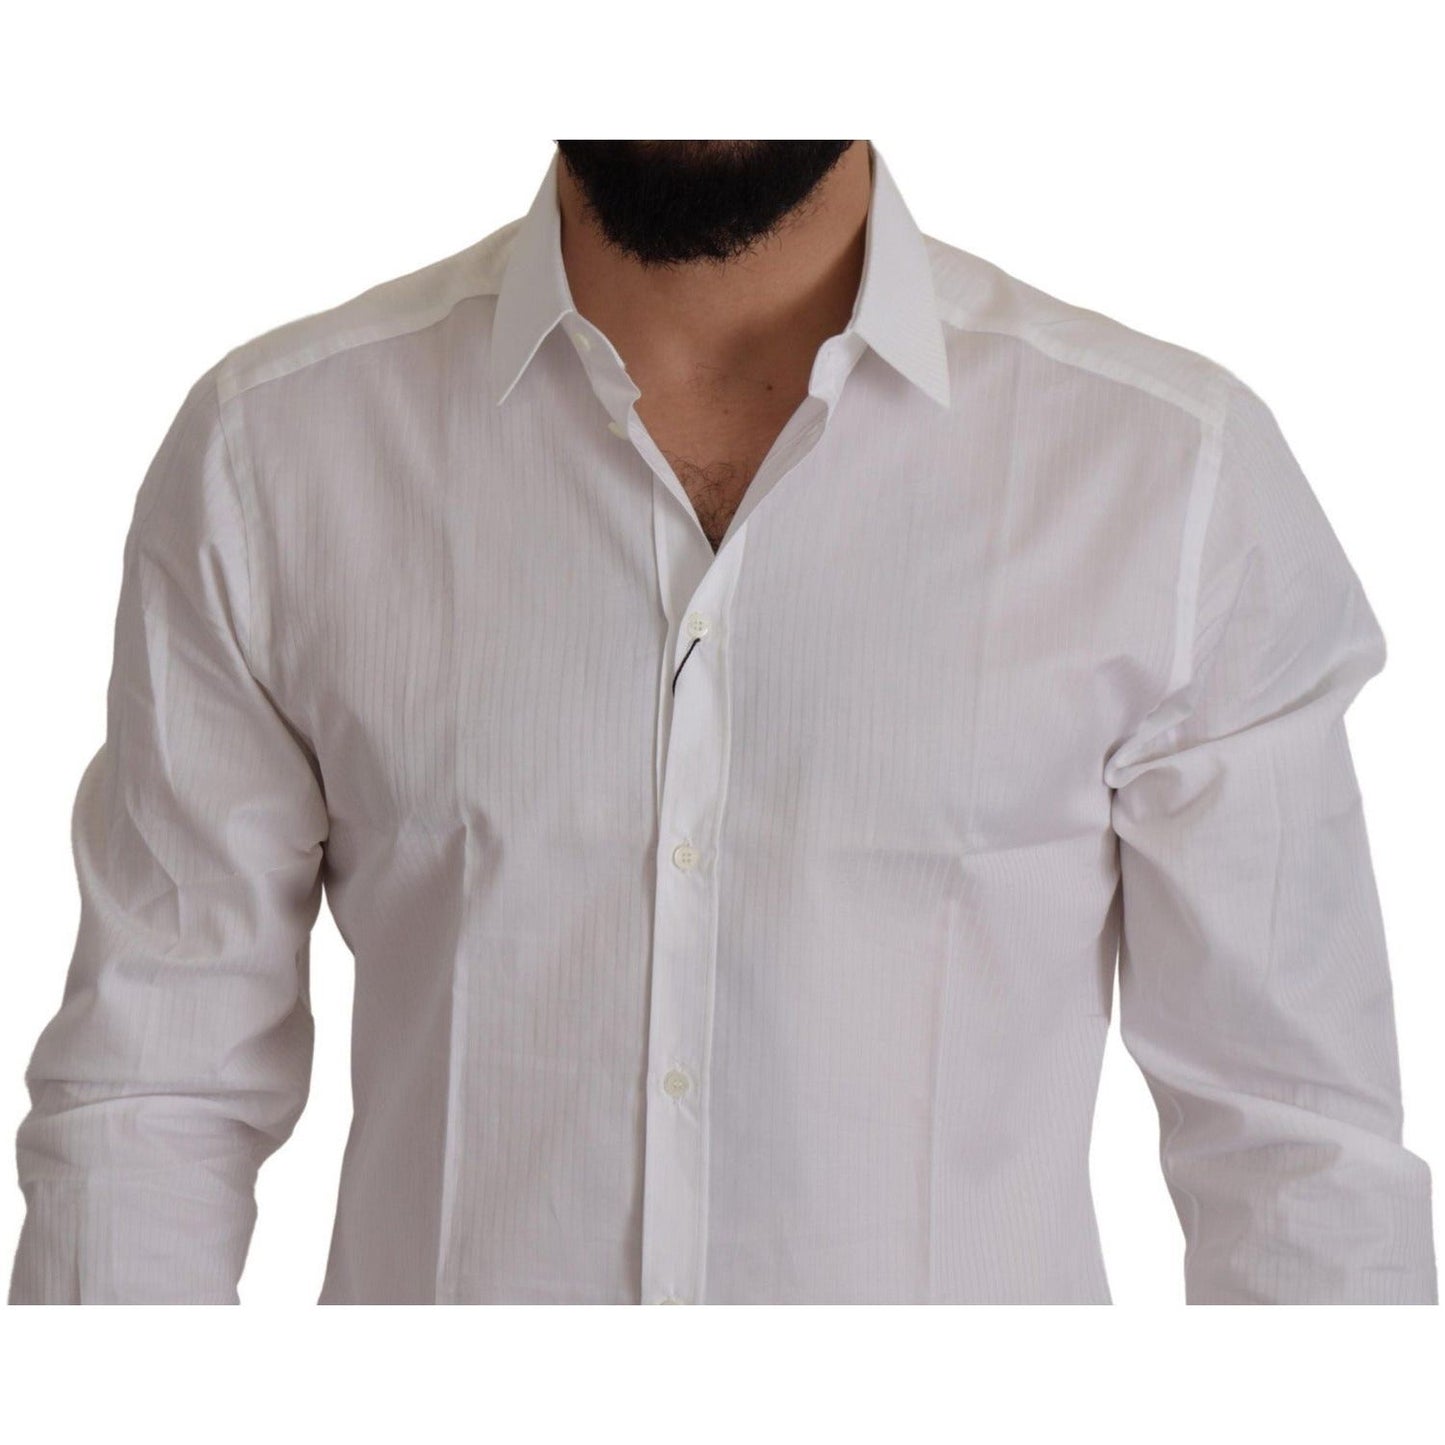 Dolce & Gabbana Elegant White Cotton Dress Shirt white-slim-fit-cotton-formal-dress-shirt